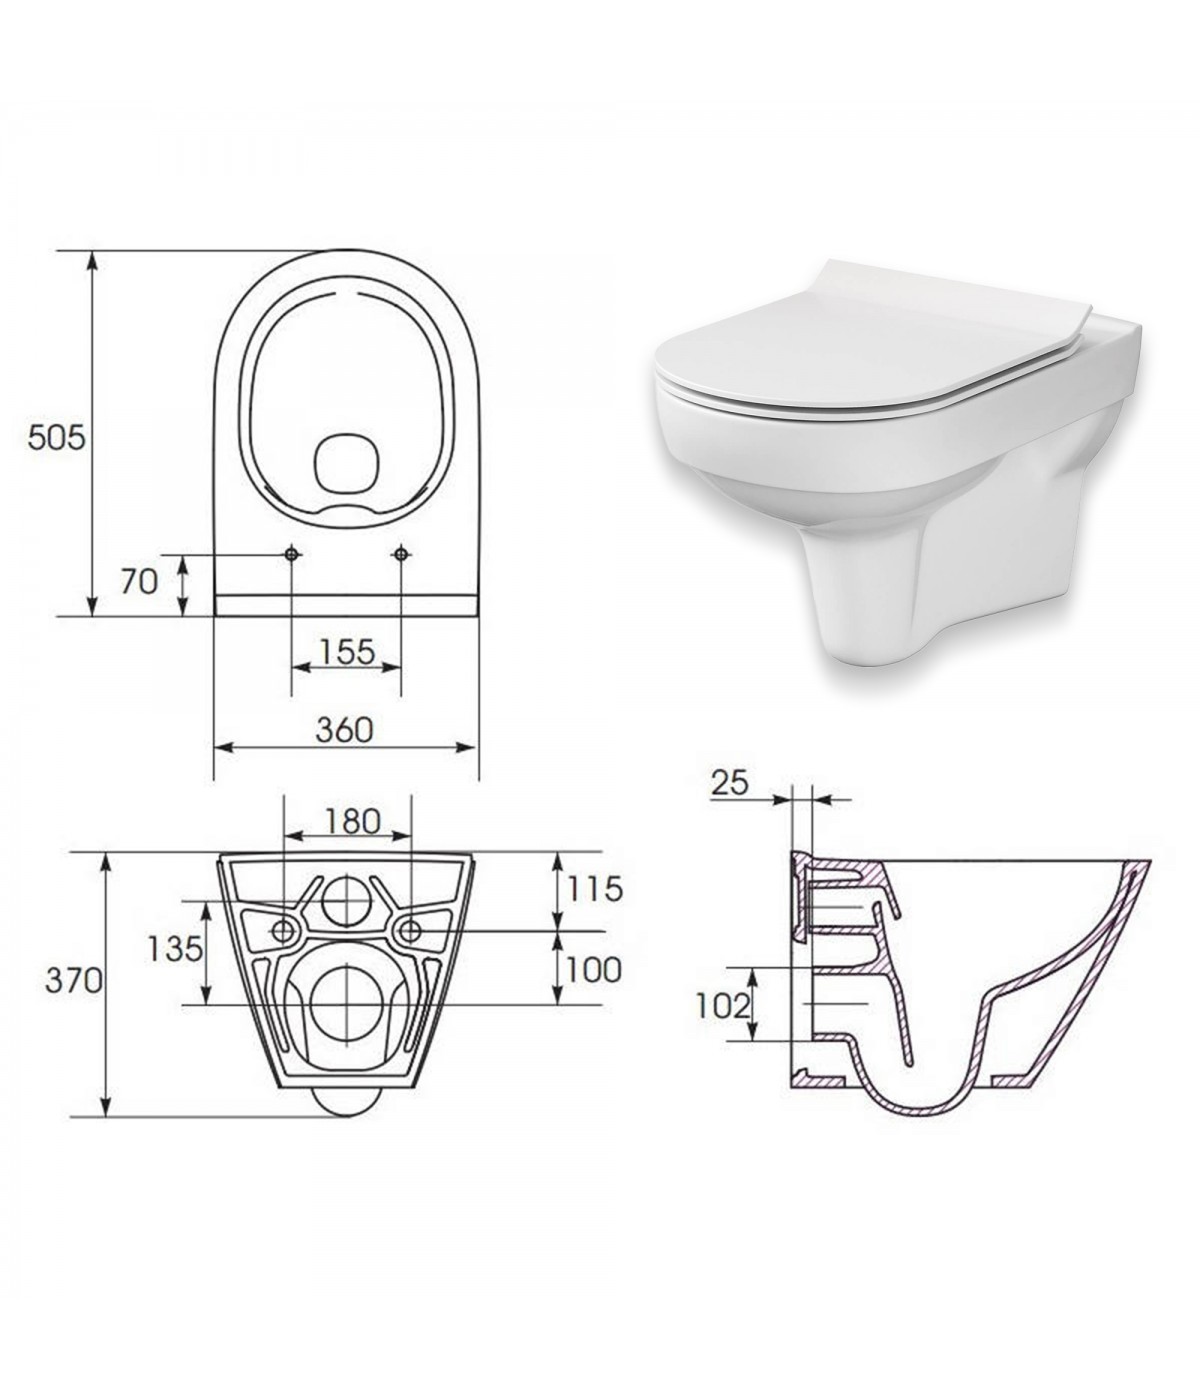 SET: WC-Vorwandelement C201 + WC-Toilette SLIM Soft-Close City-Cleanon Weiß + Schallschutzmatte + WC-Betätigungsplatte Chrom